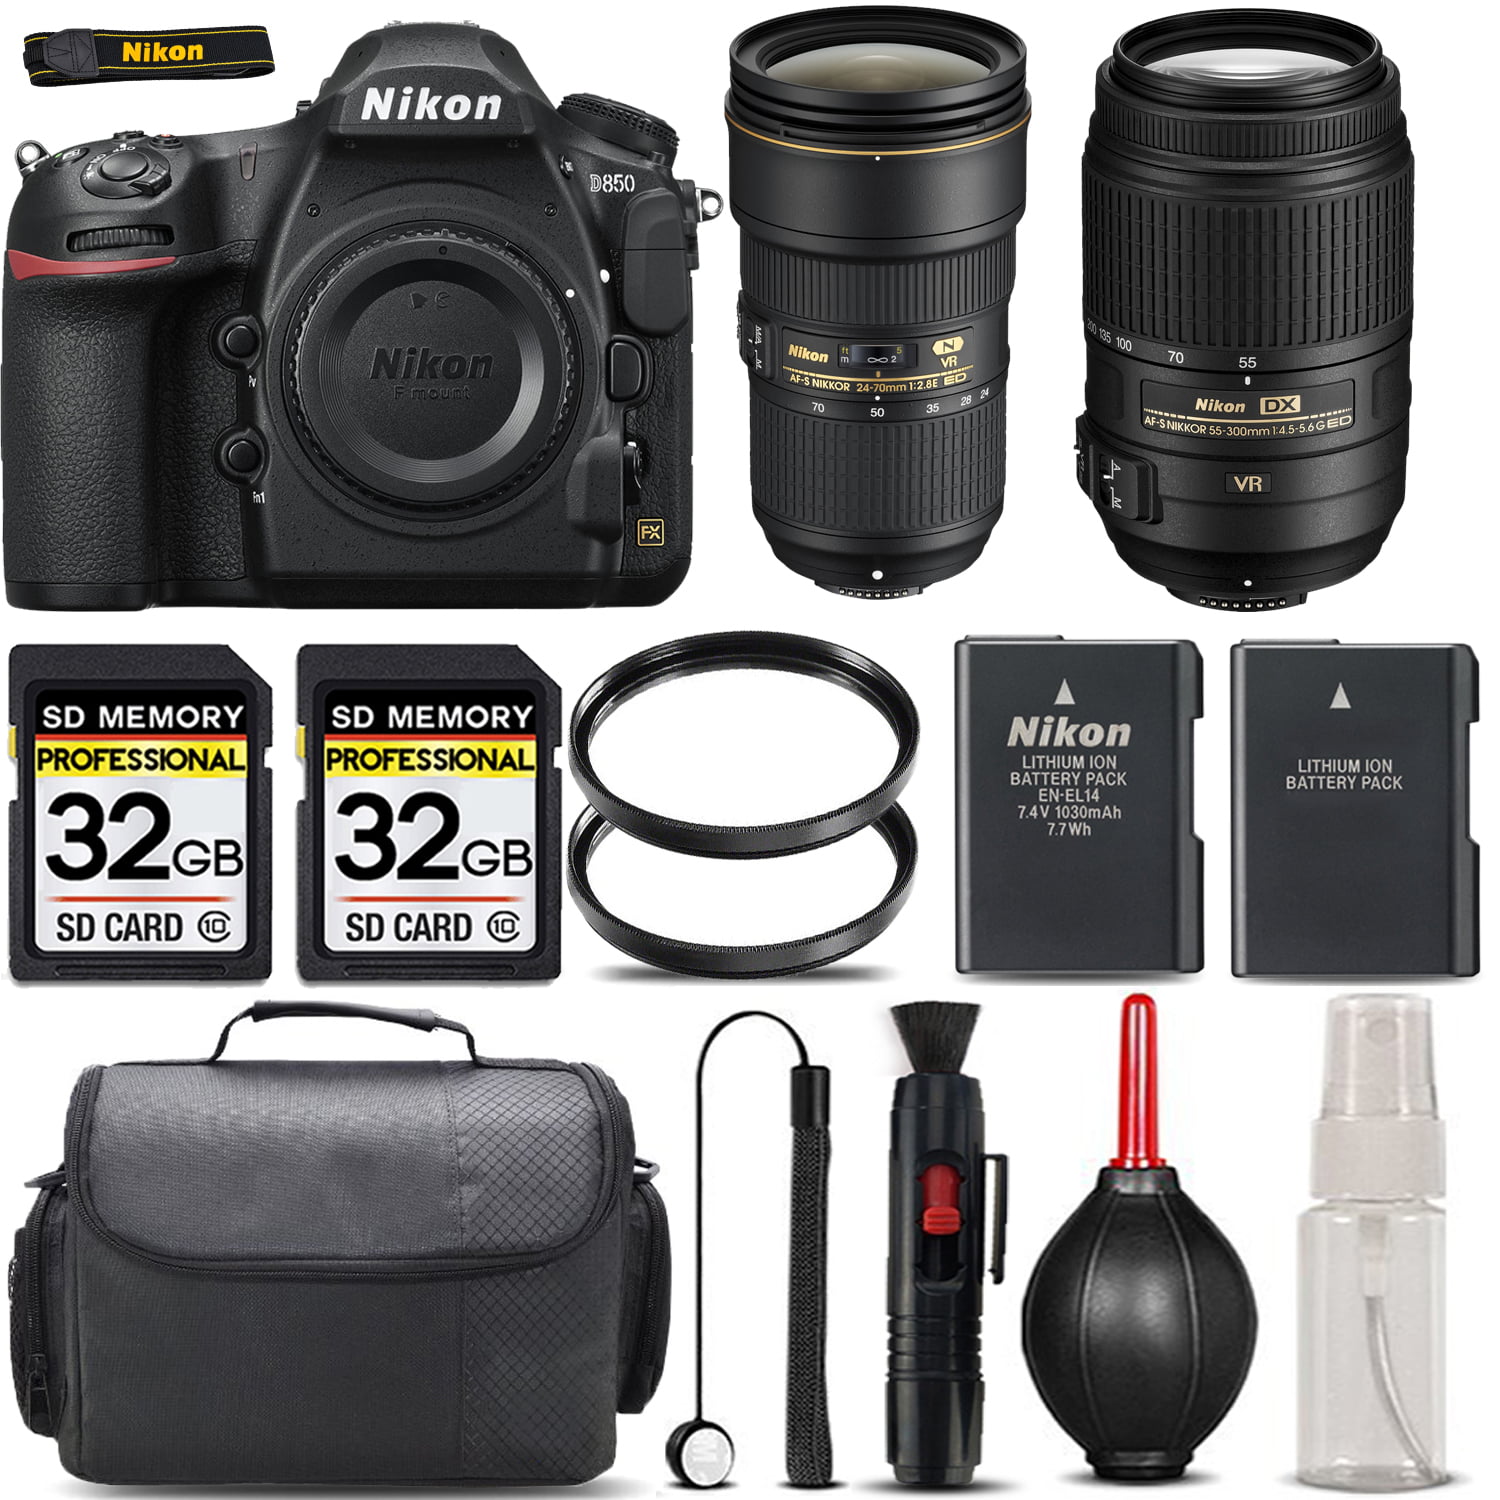 Lens Cap Cover Keeper Protector for Nikon AF-S DX NIKKOR 55-300mm f/4.5-5.6G ED VR 